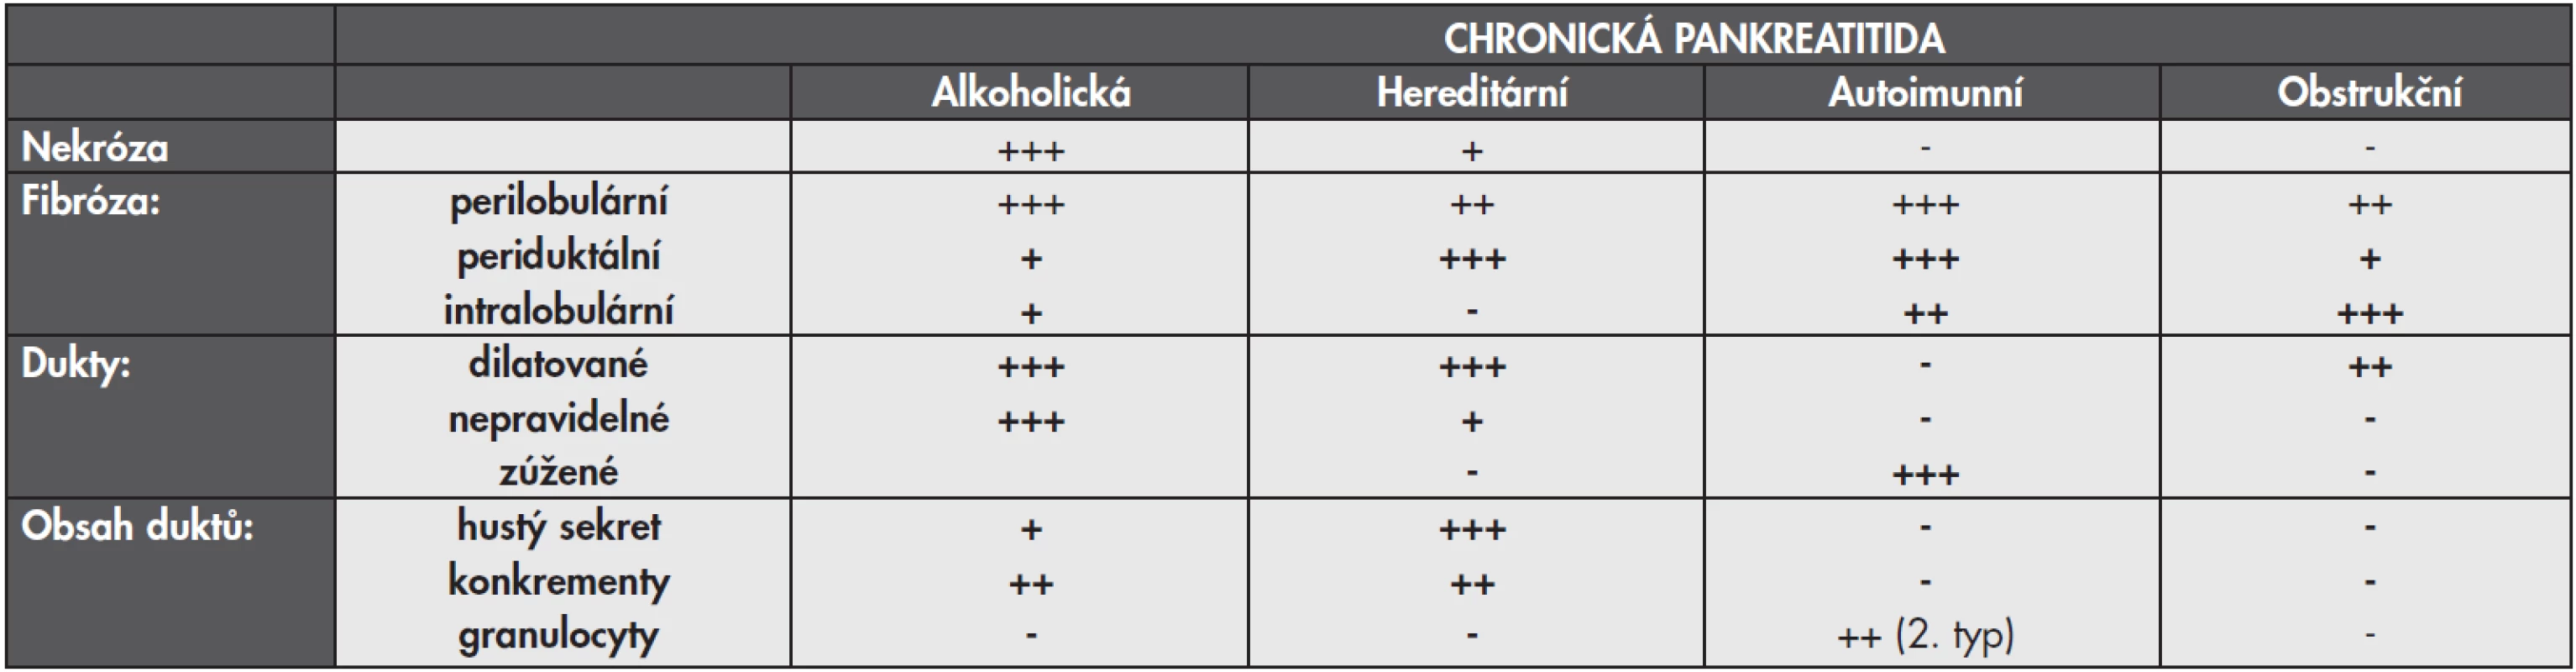 Základní znaky jednotlivých typů chronické pankreatitidy